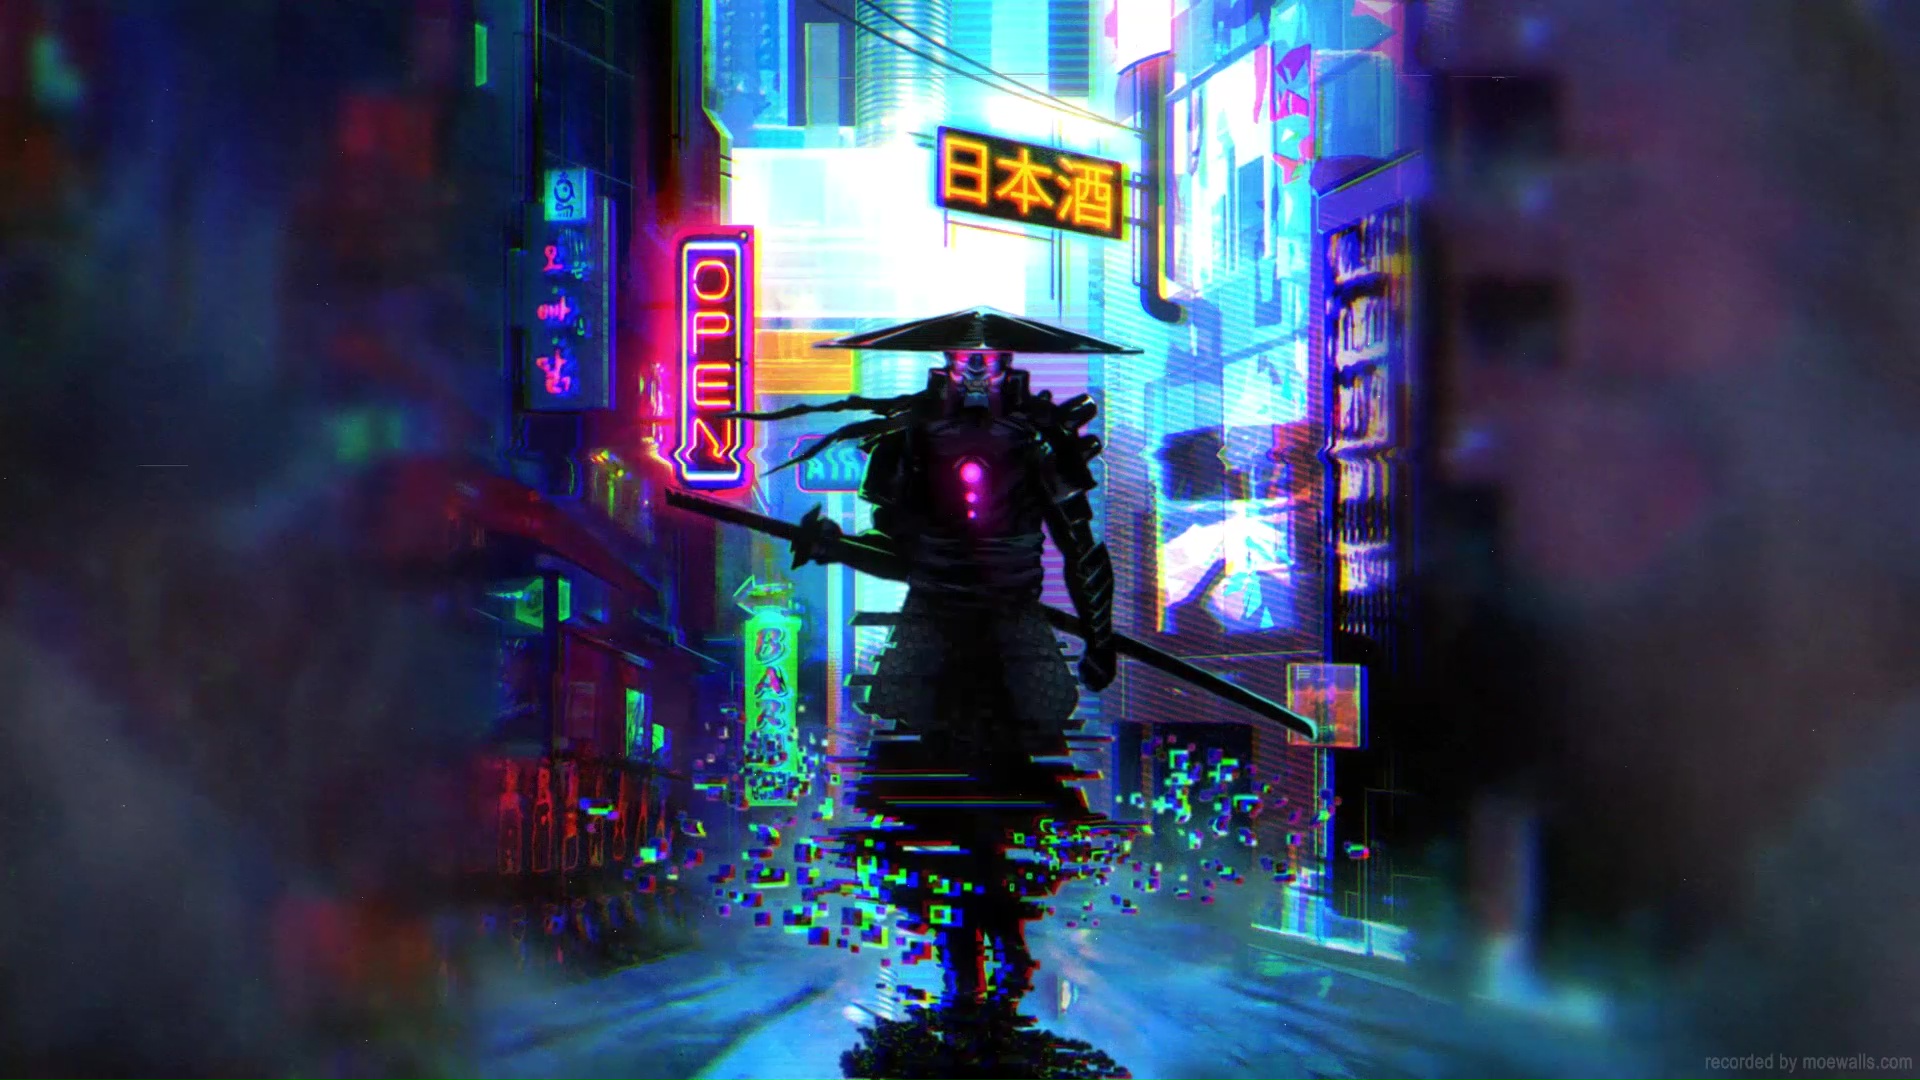 Cyber Samurai Cyberpunk 2077